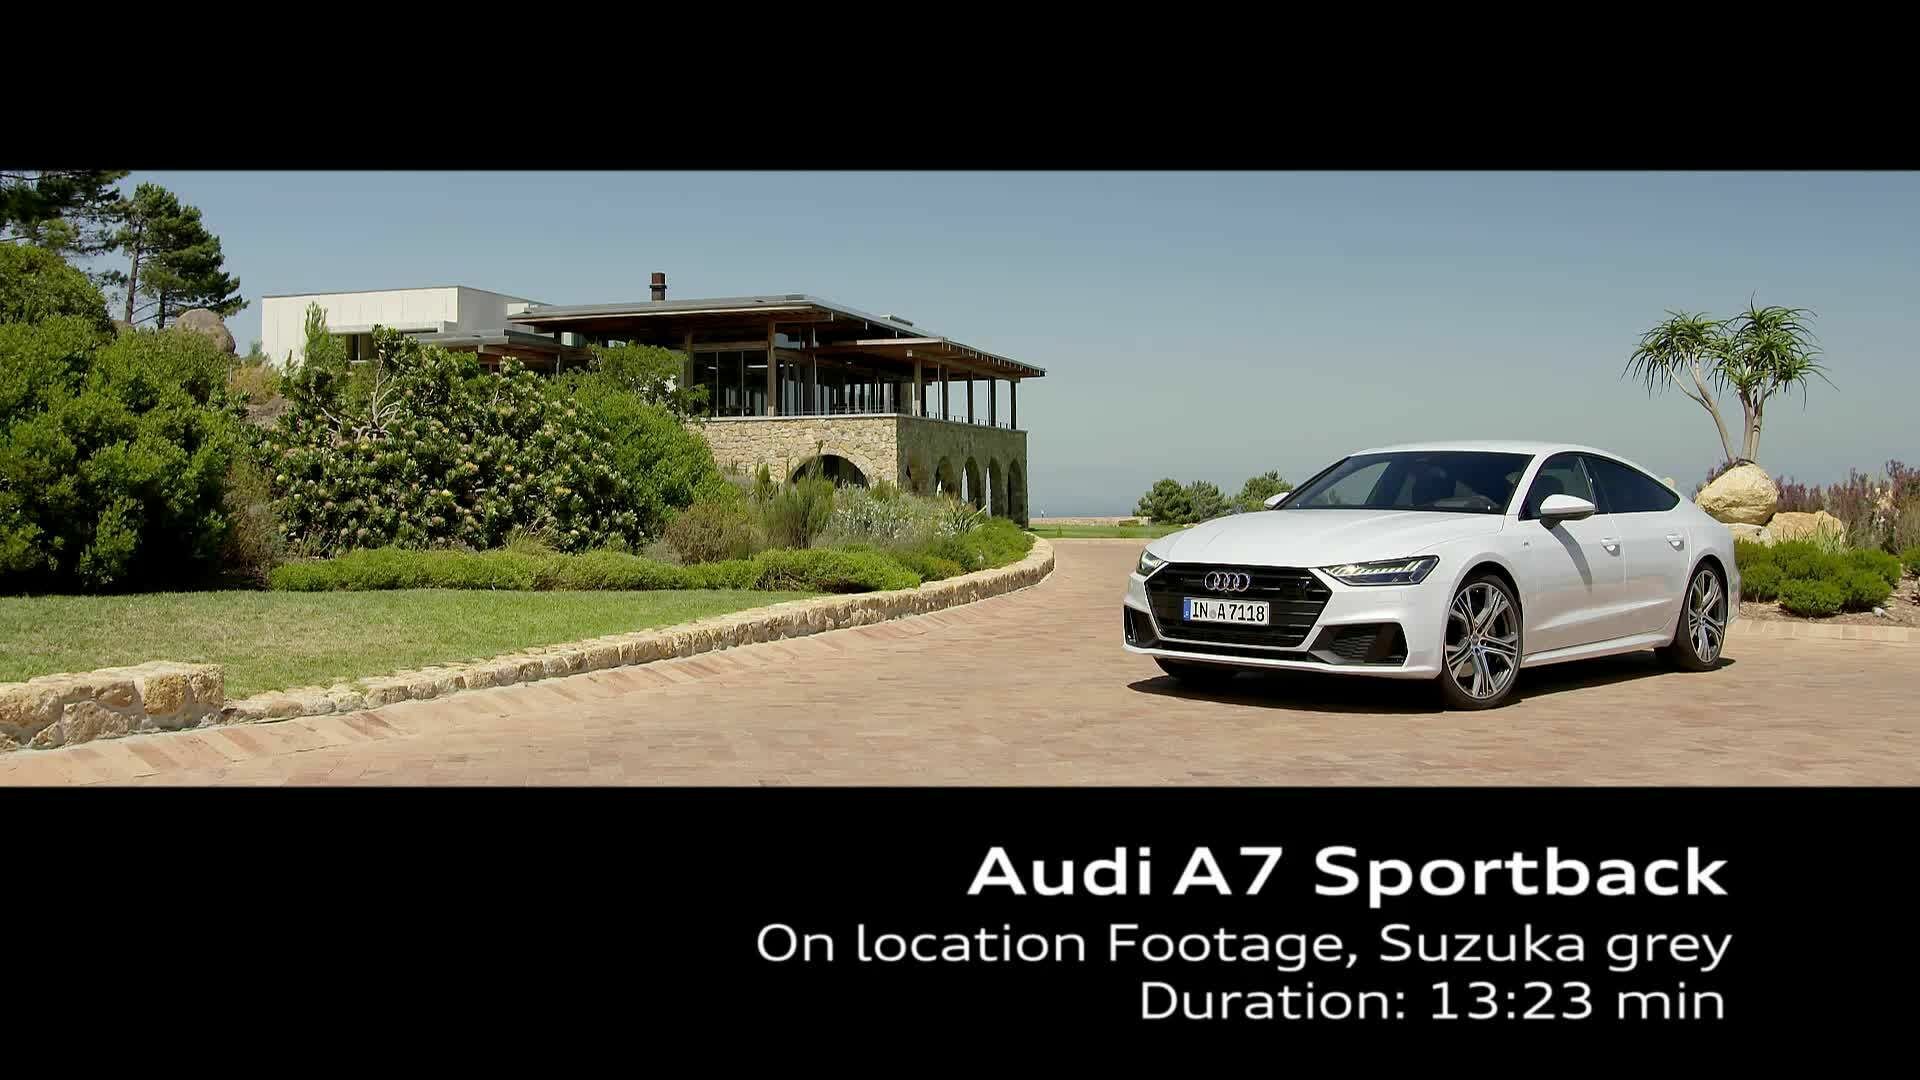 Audi A7 Sportback in Suzuka gray – on Location Footage Kapstadt